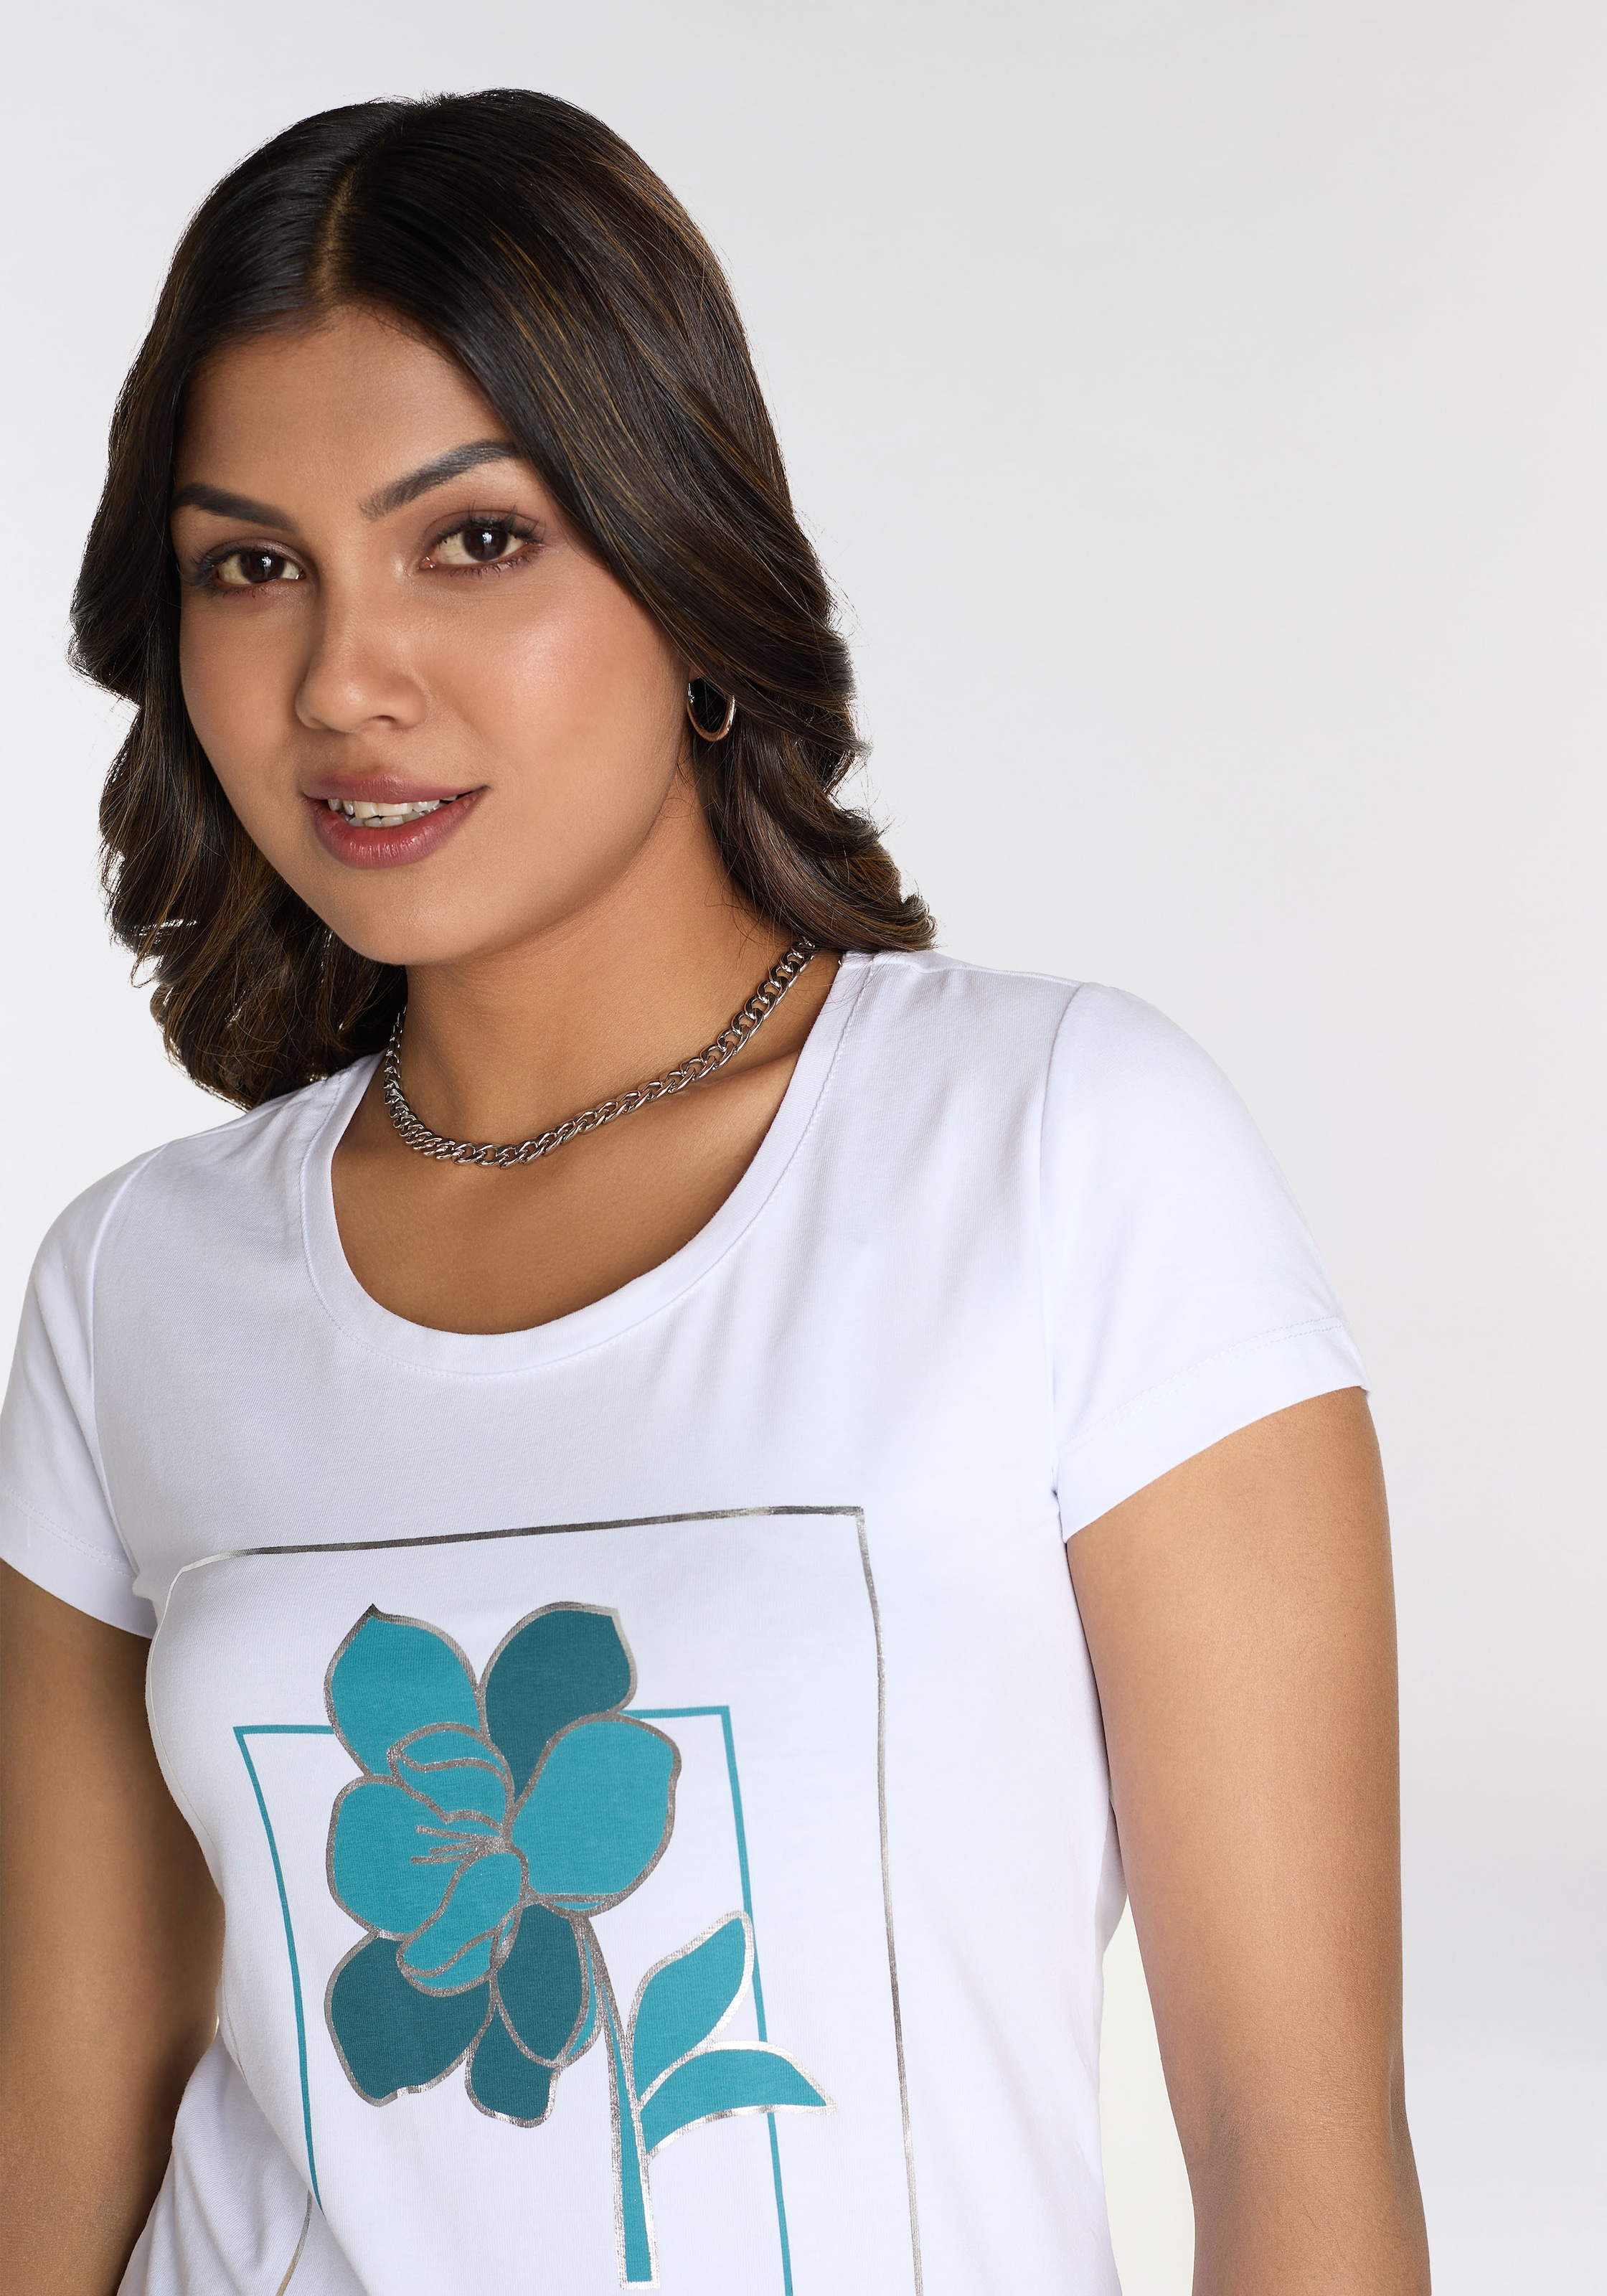 Laura Scott T-Shirt, mit modischem Frontprint - NEUE KOLLEKTION